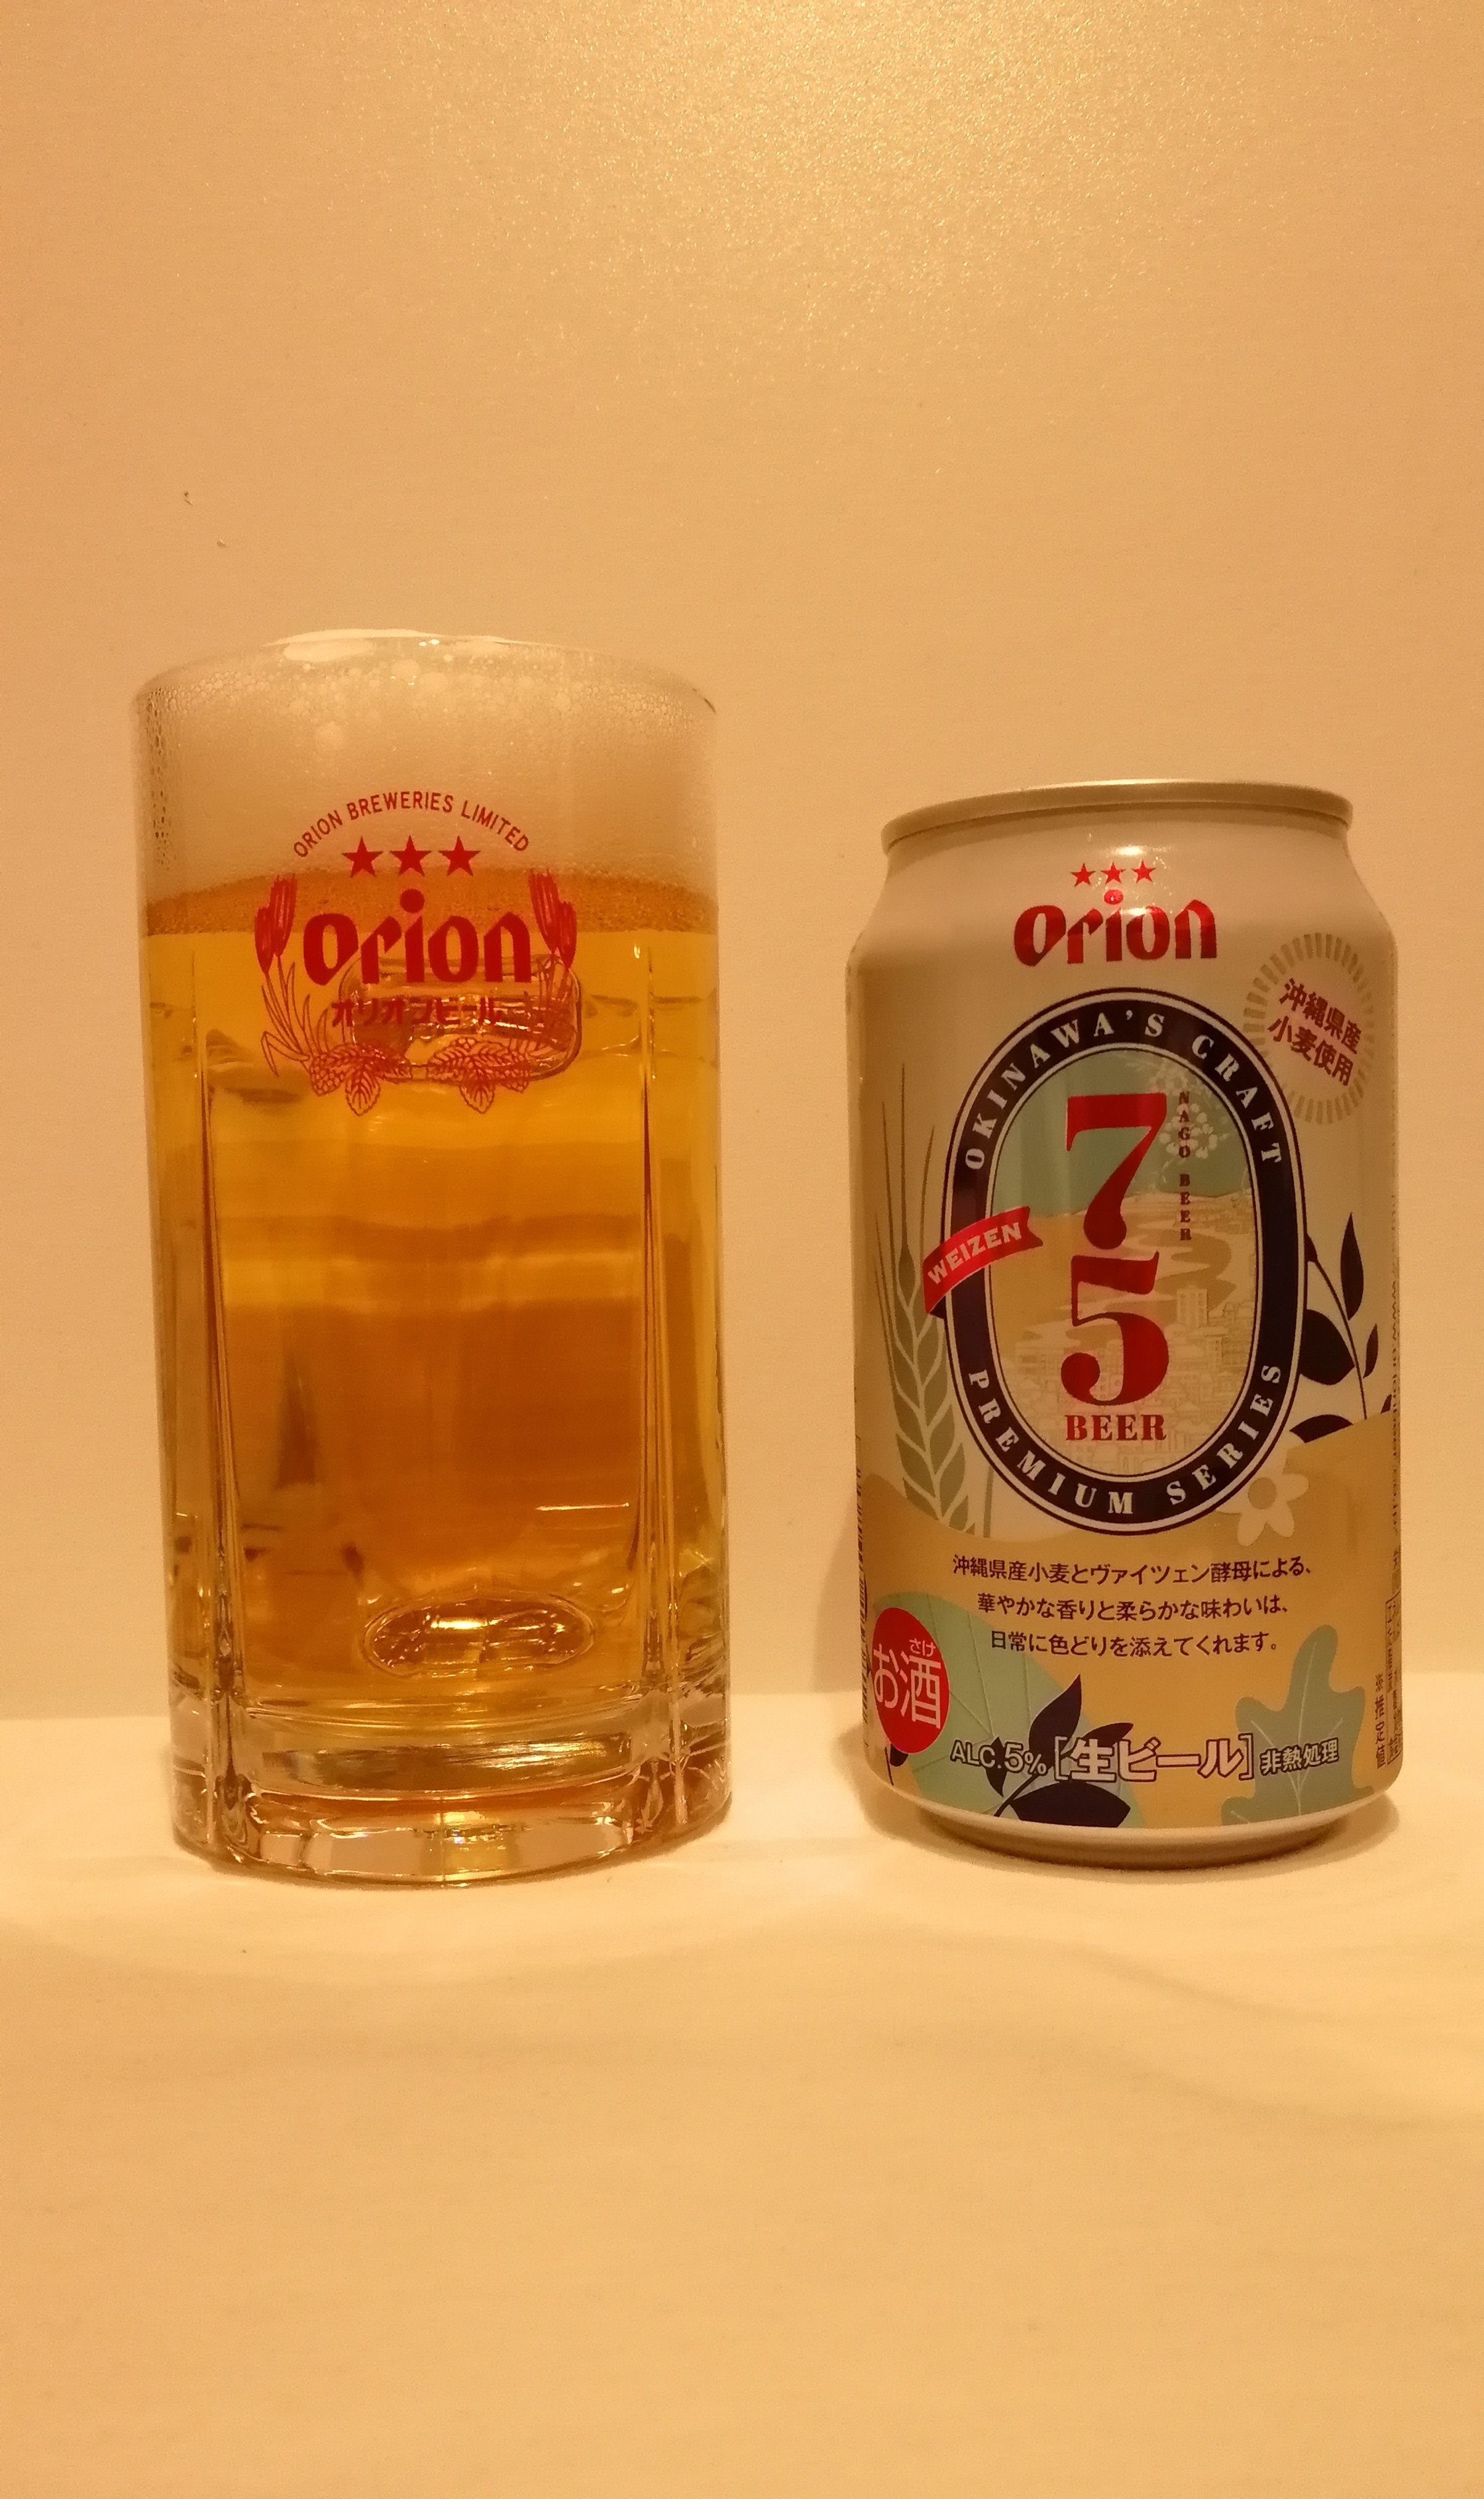 沖縄,オリオンビール,75BEER ヴァイツェン